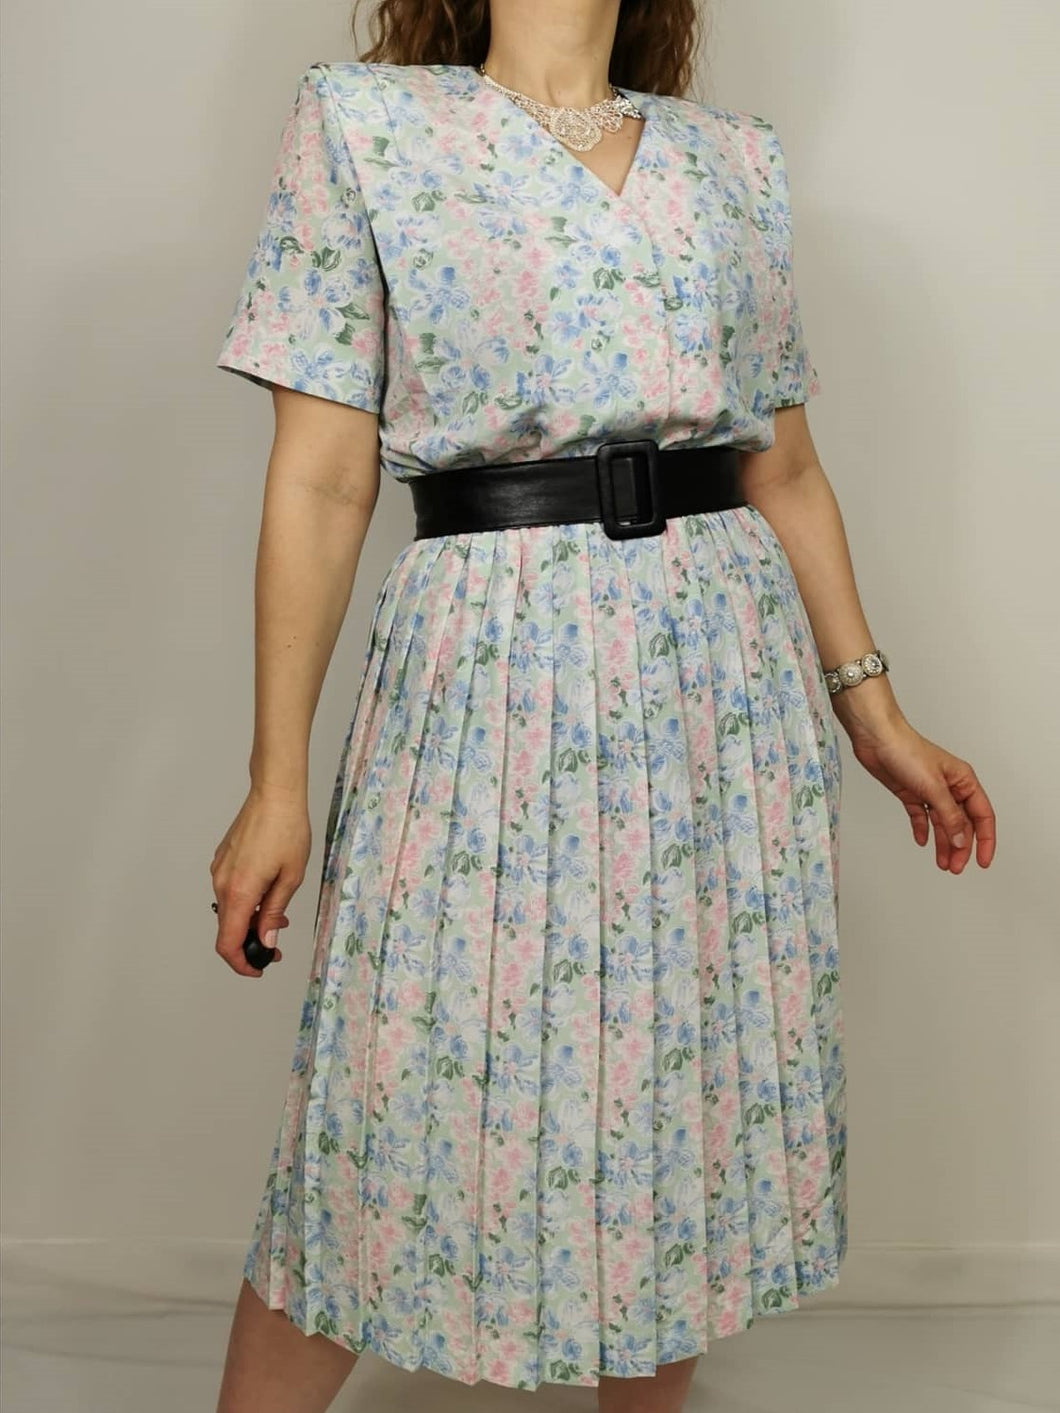 Vintage 80s pastel floral dress